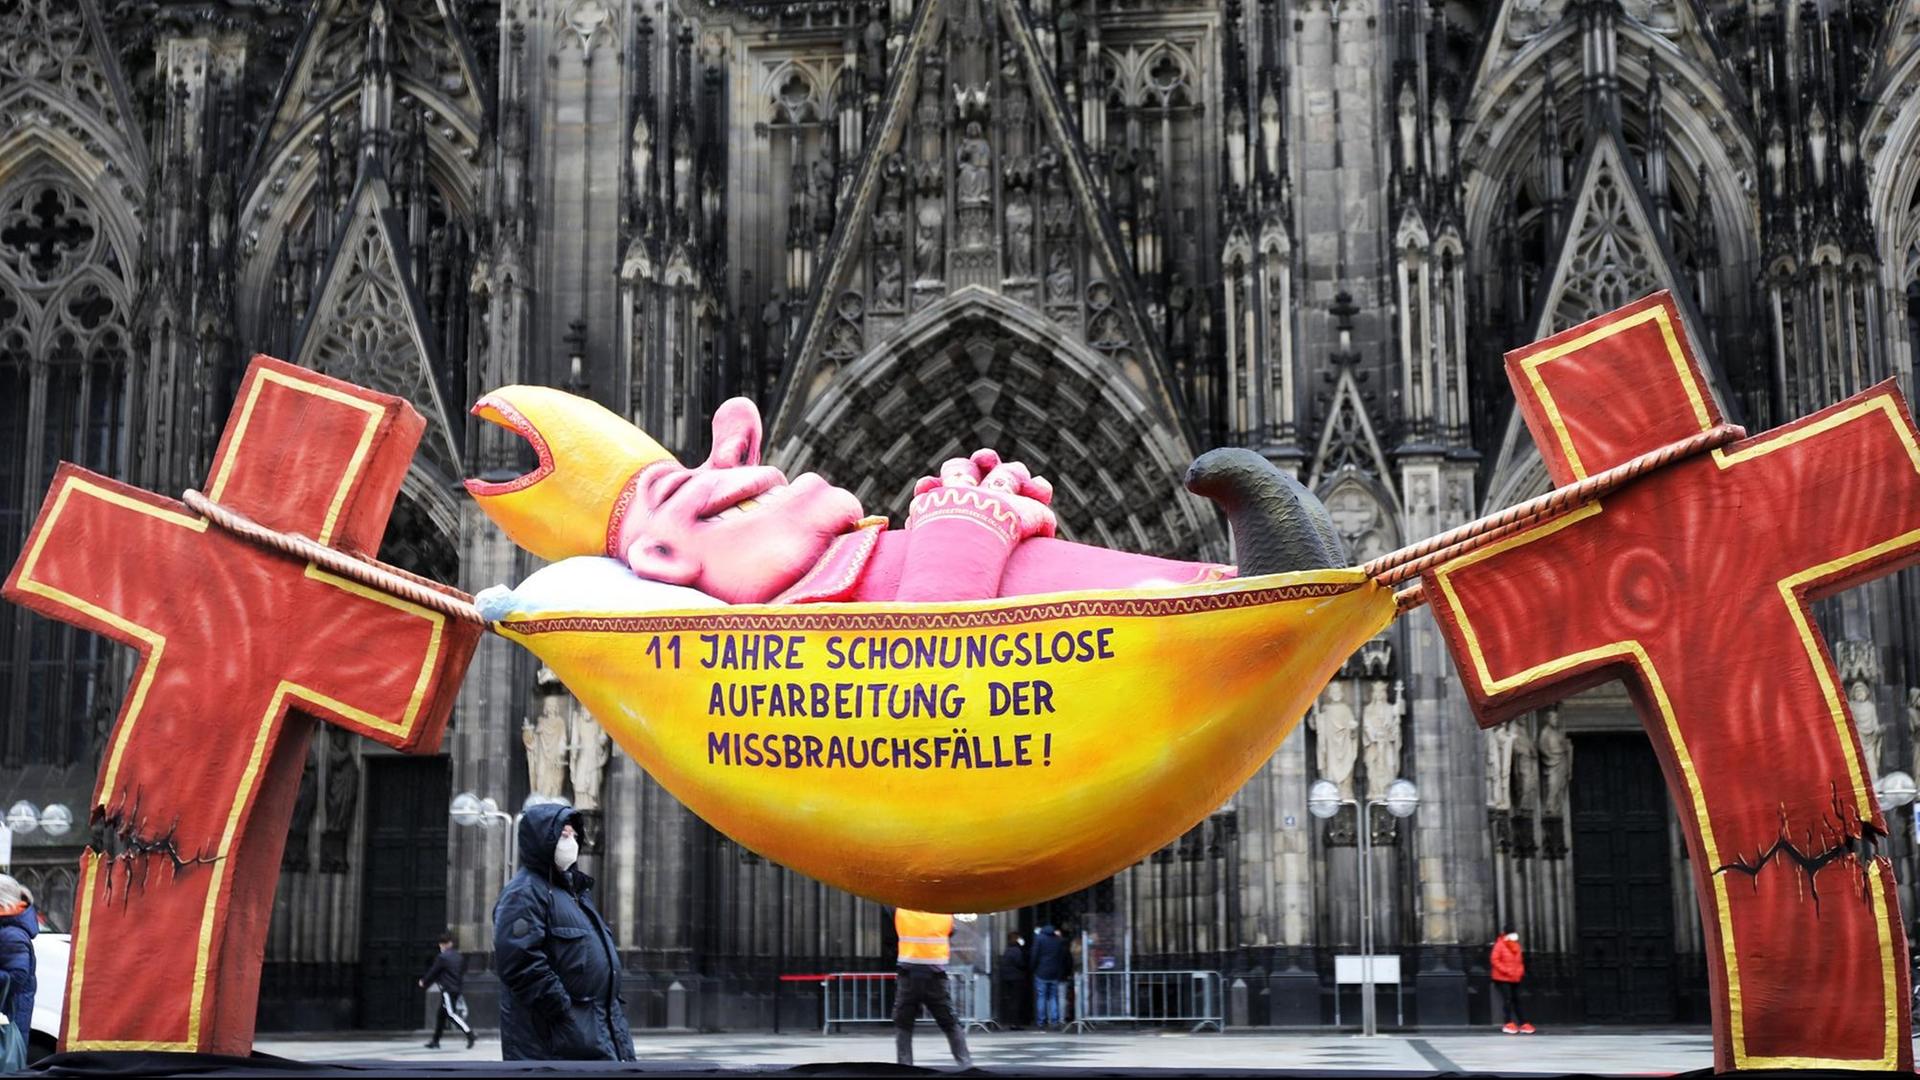 Die Plastik des Künstlers Jacques Tilly mit dem Slogan "11 Jahre schonungslose Aufarbeitung der Missbrauchsfälle!" steht vor dem Kölner Dom